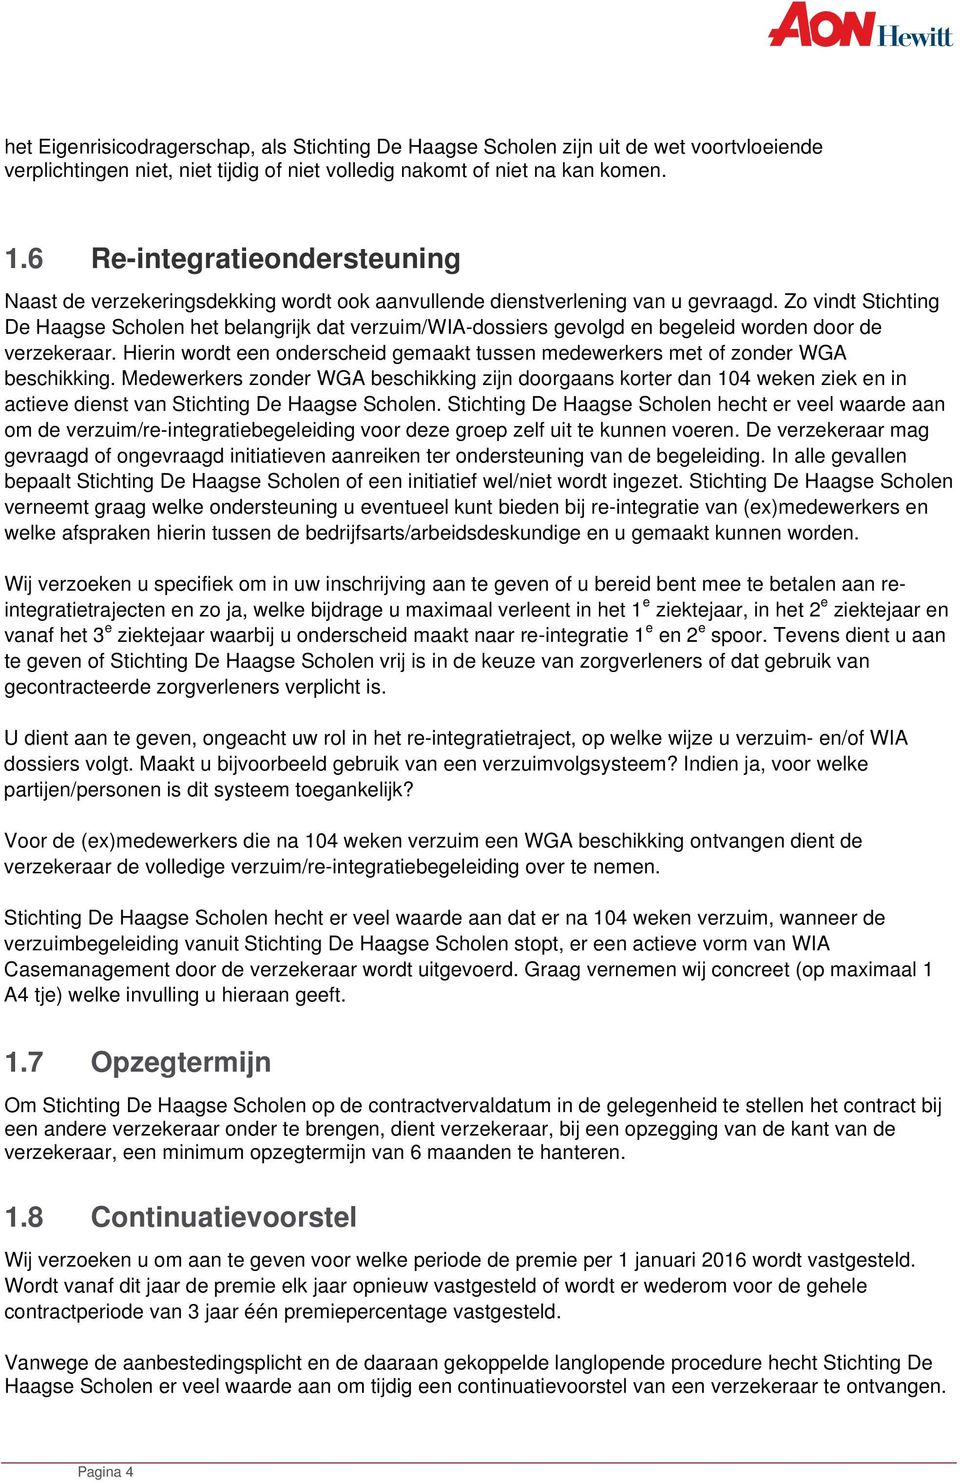 Zo vindt Stichting De Haagse Scholen het belangrijk dat verzuim/wia-dossiers gevolgd en begeleid worden door de verzekeraar.